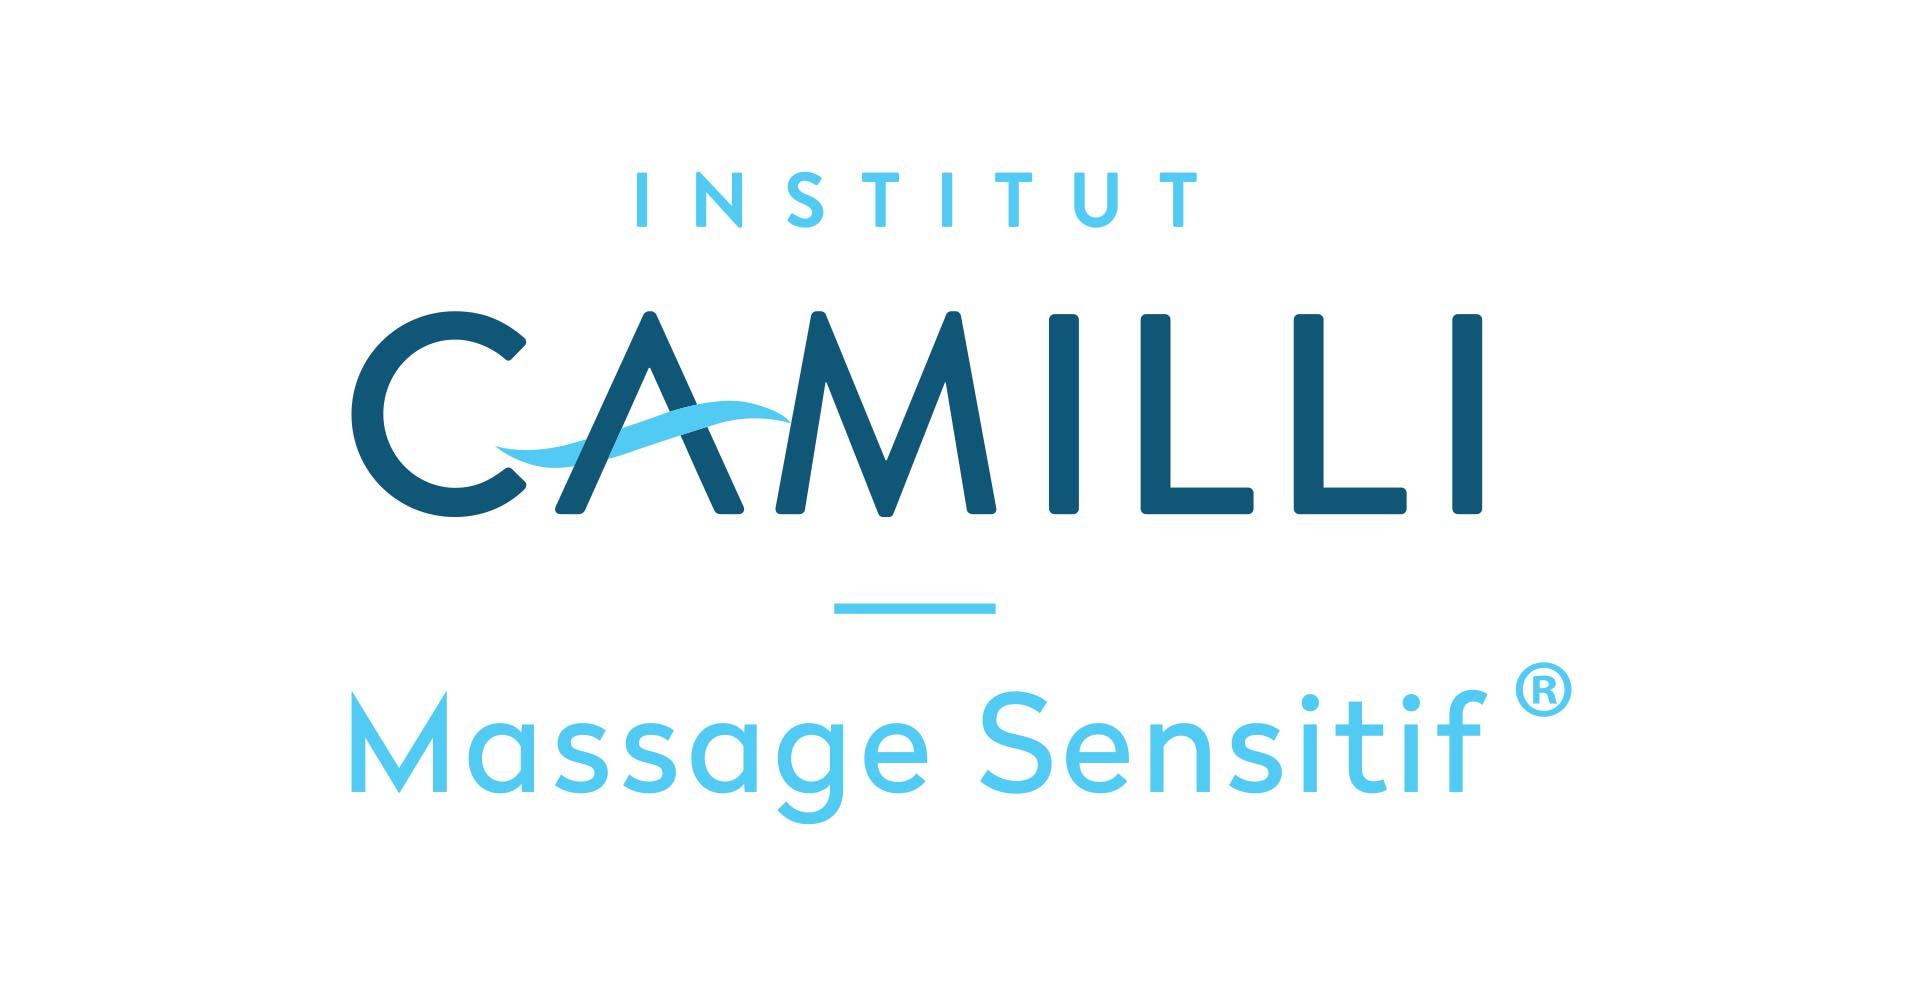 Massage Sensitif Camilli